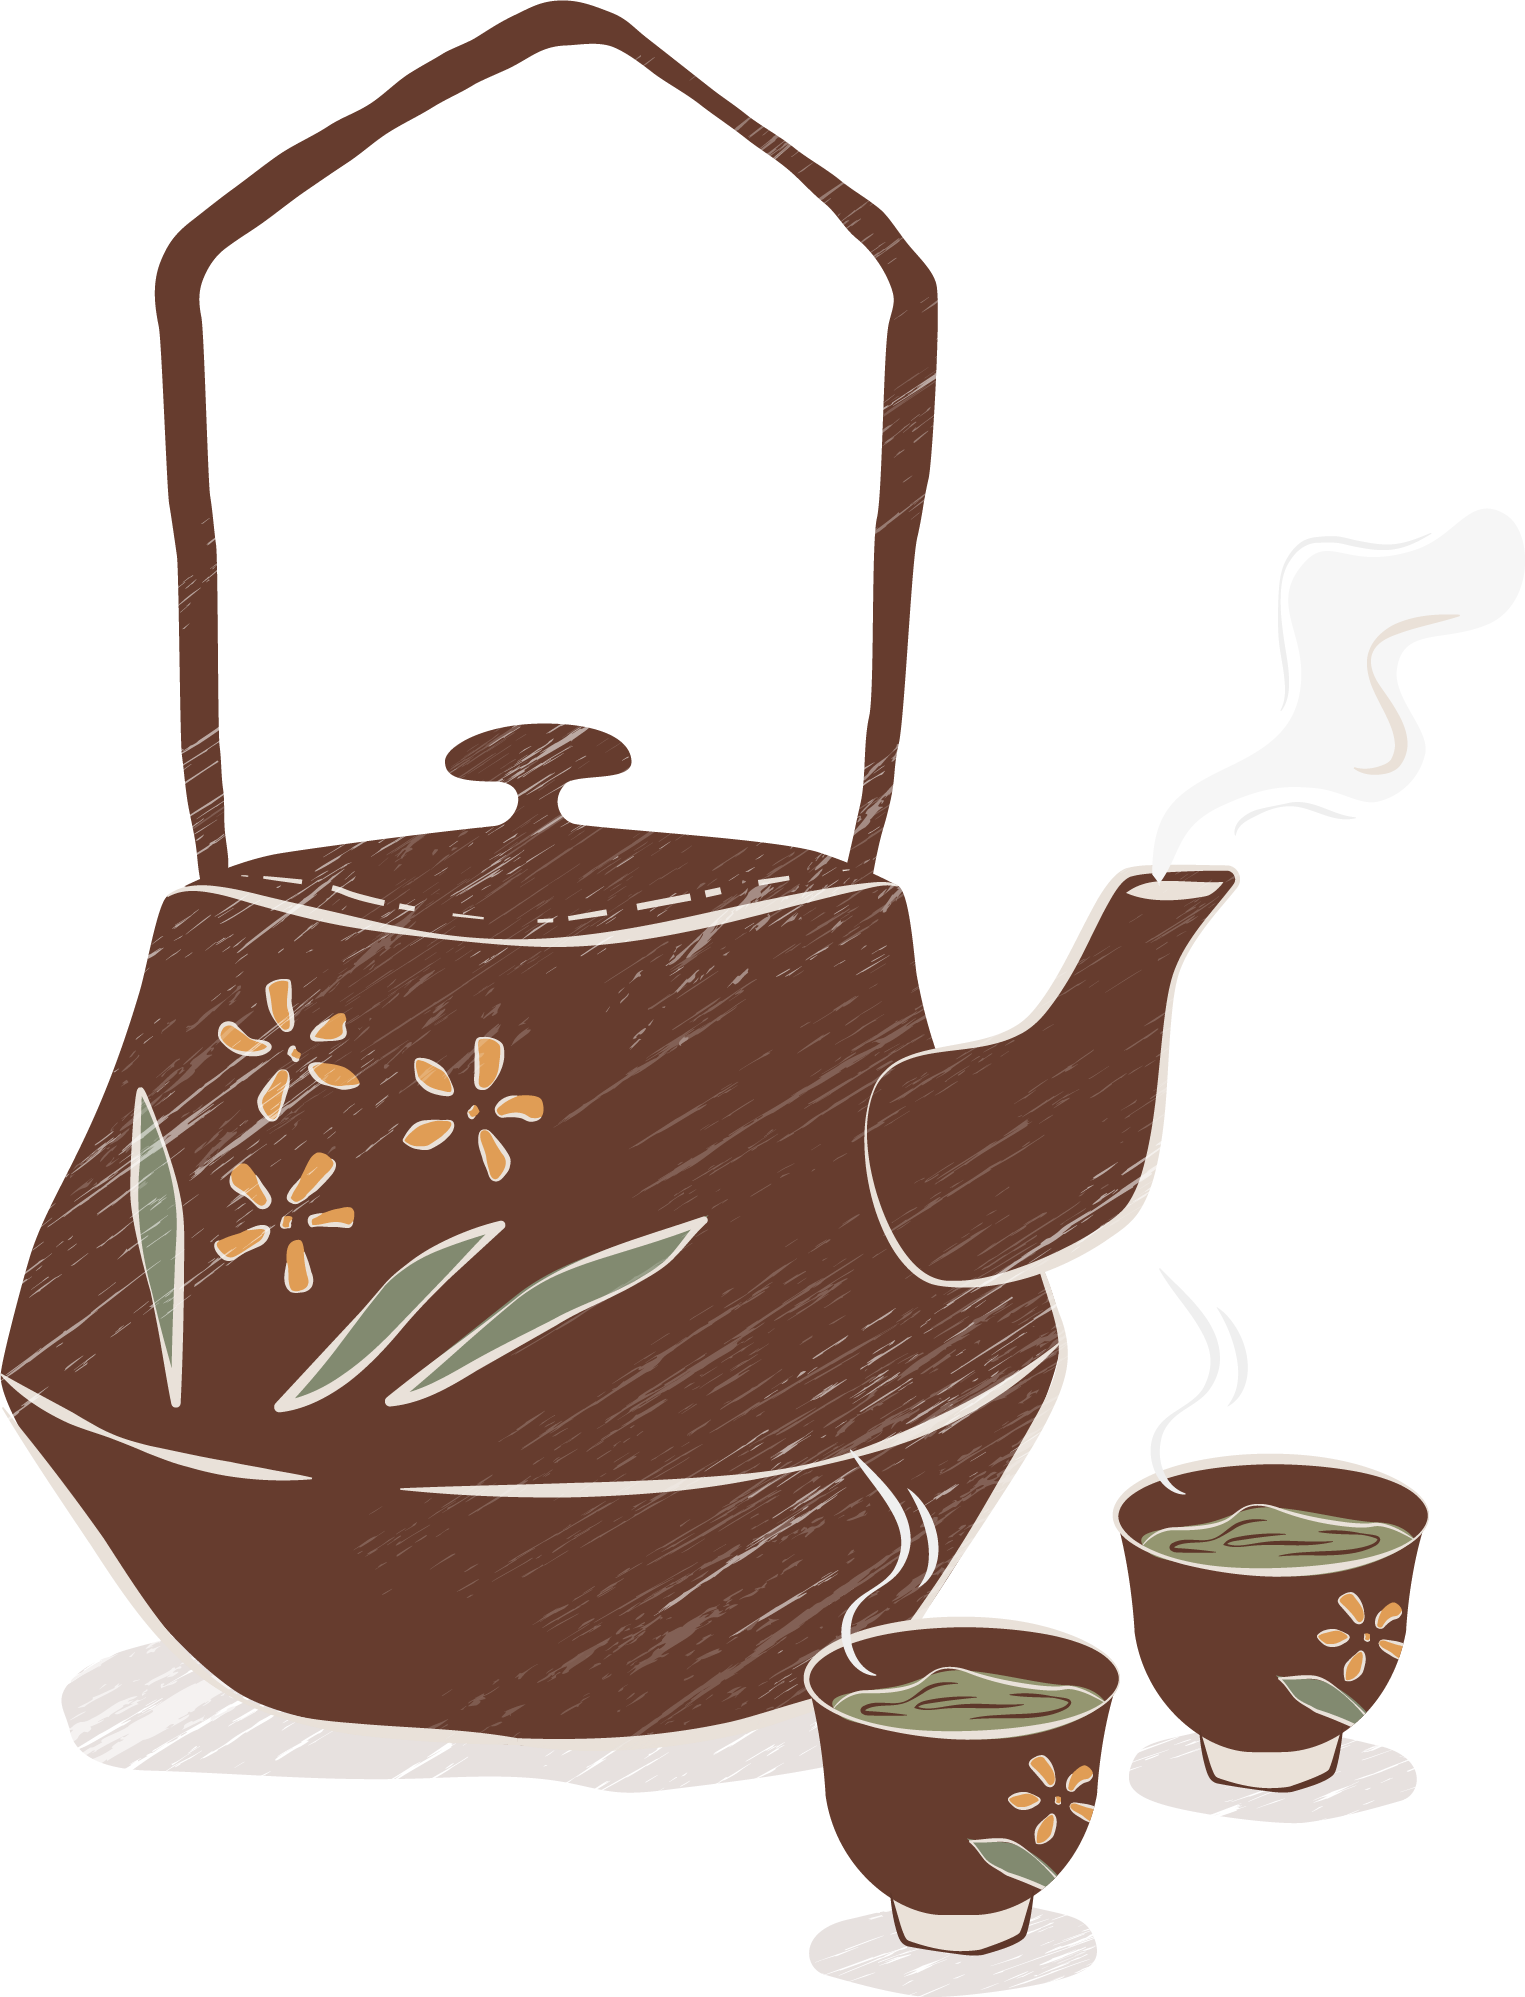 茶茶壶茶杯杯子水壶